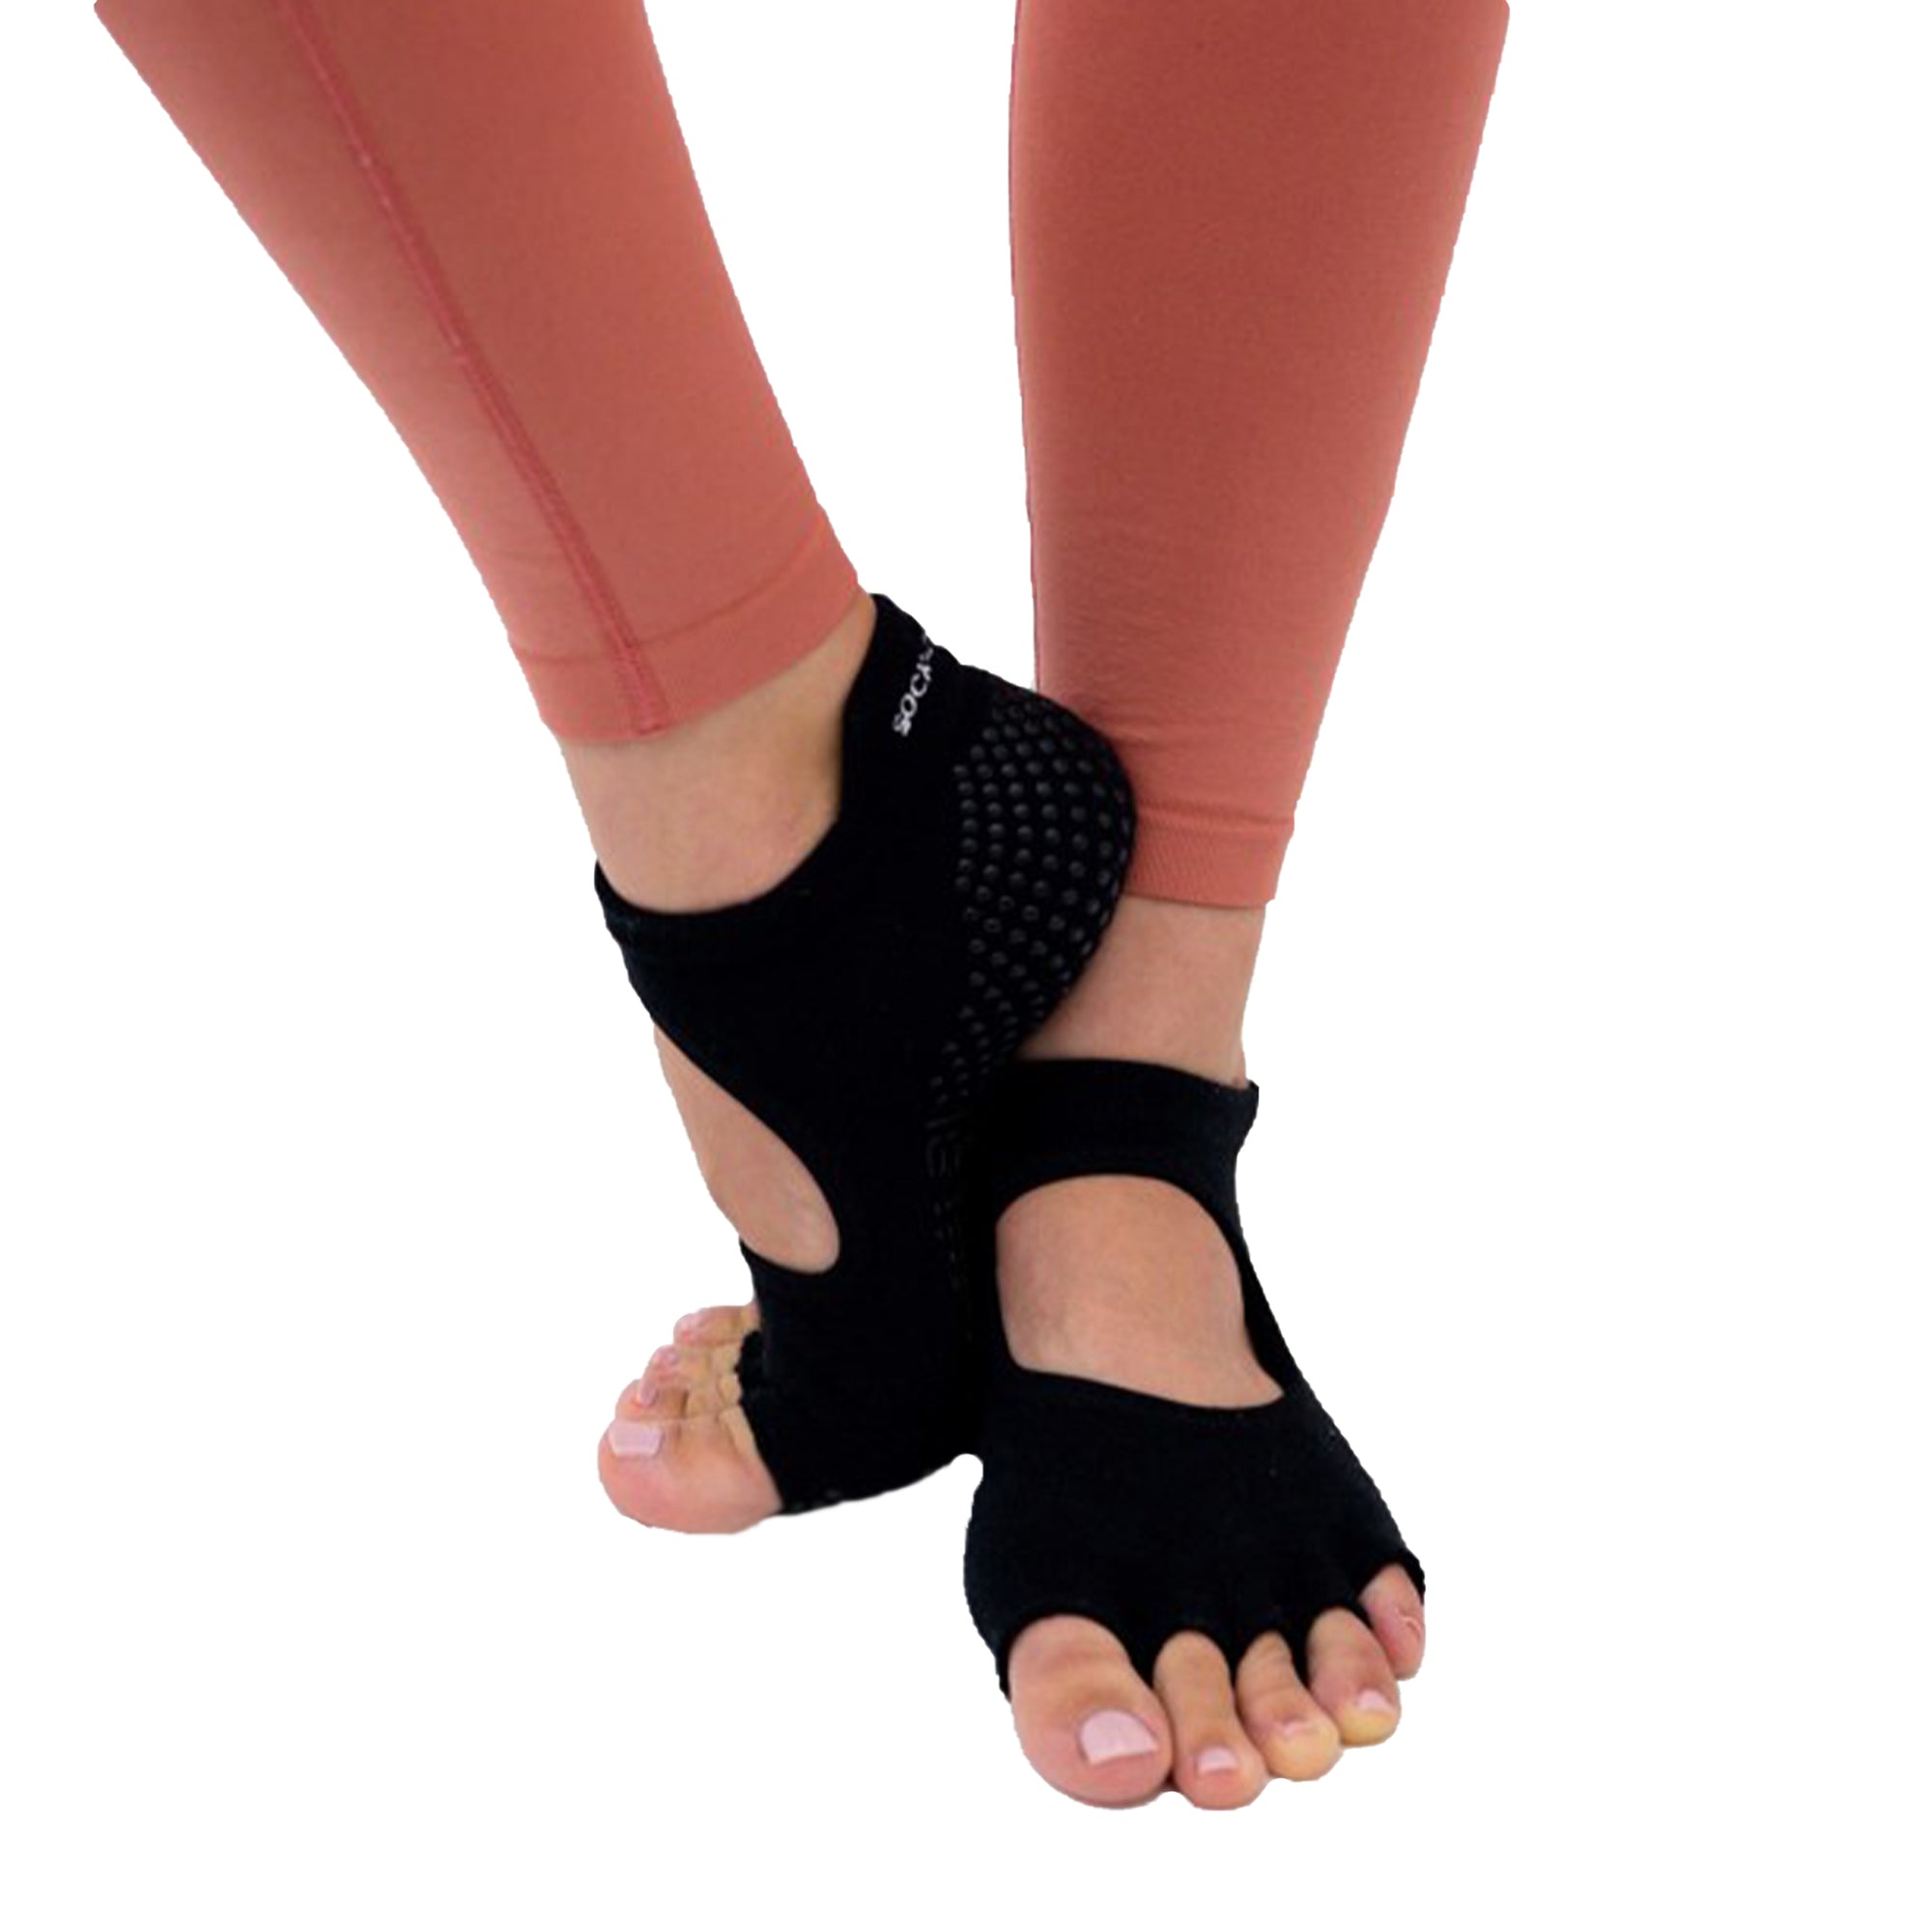  COANSEN Yoga Socks with Grips for Women, Toeless Socks